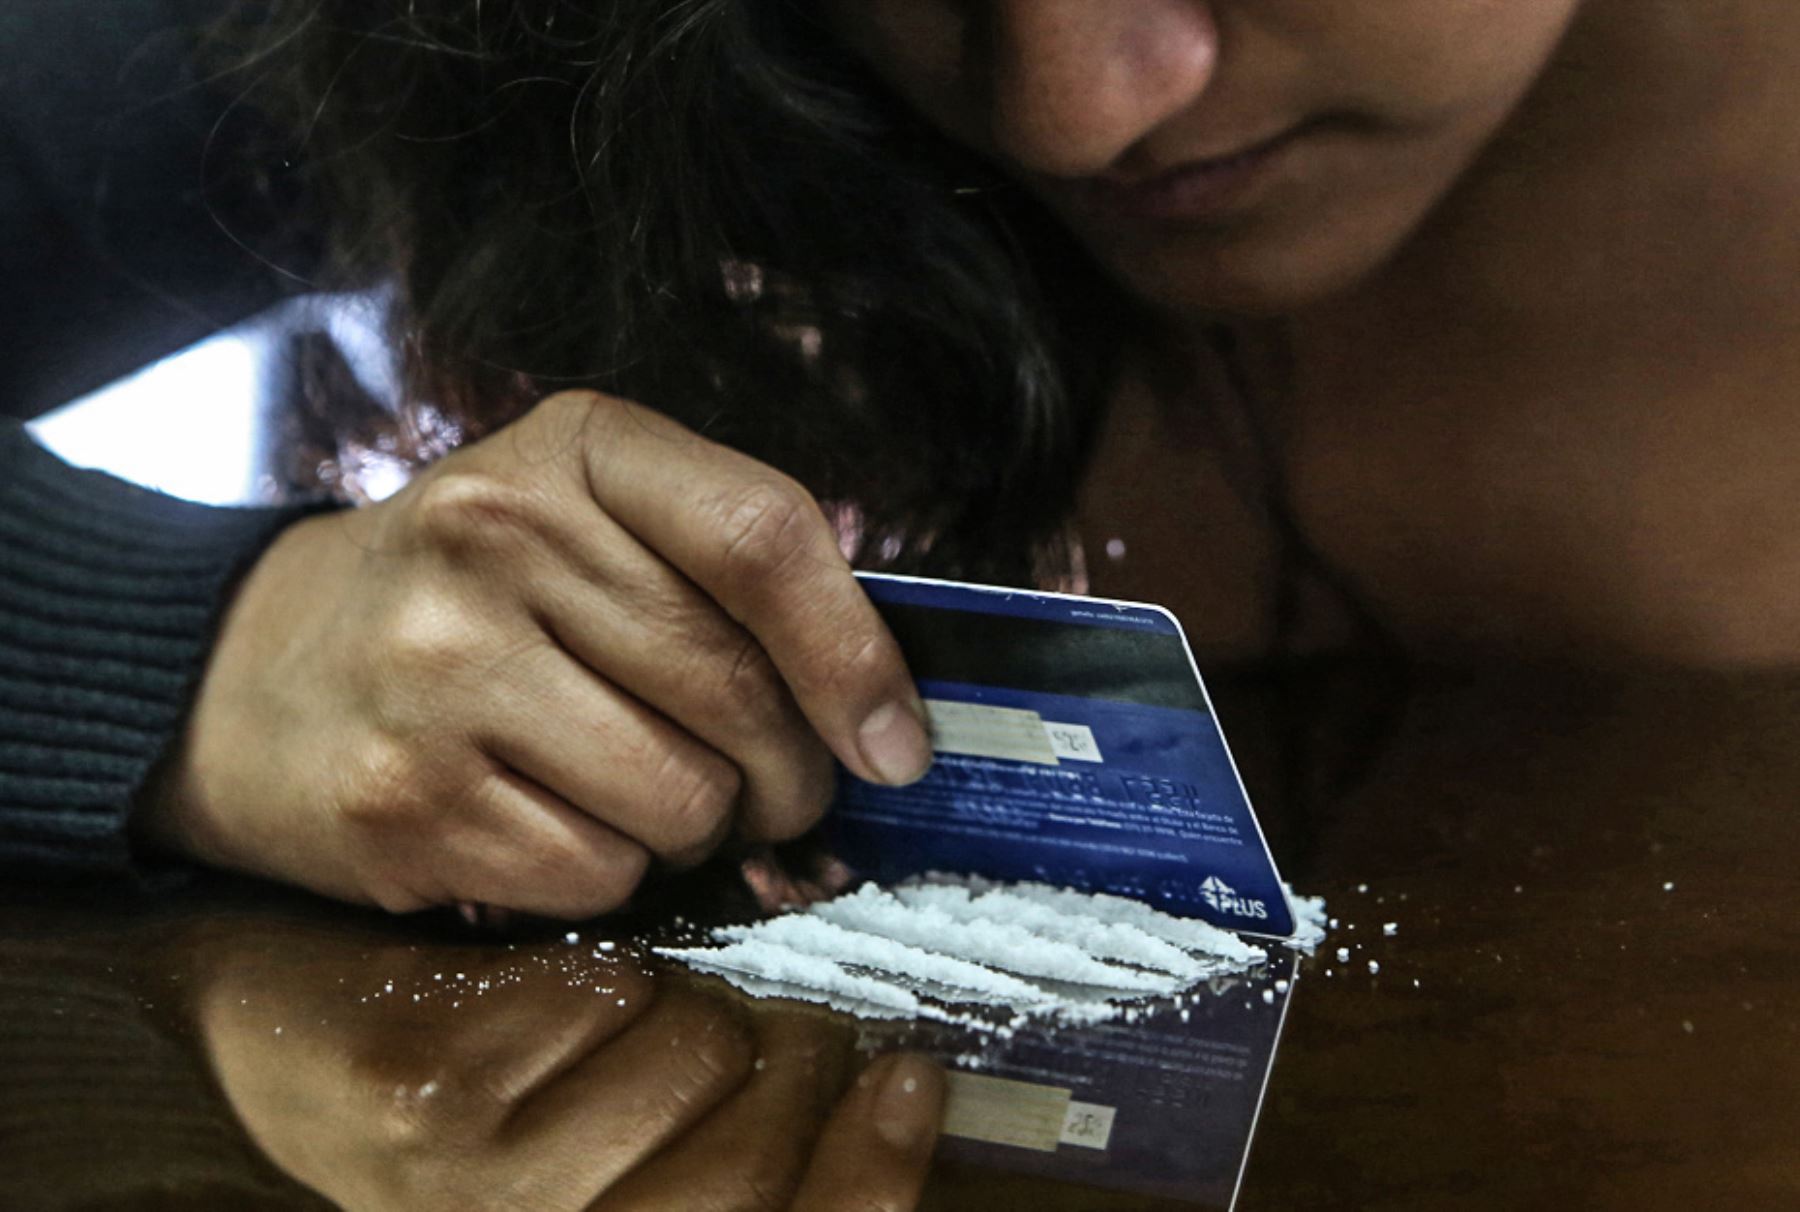 Factores biológicos, sociales y culturales explican por qué las mujeres "dependen" más rápidamente de las drogas. Foto: ANDINA/Juan Carlos Guzmán.